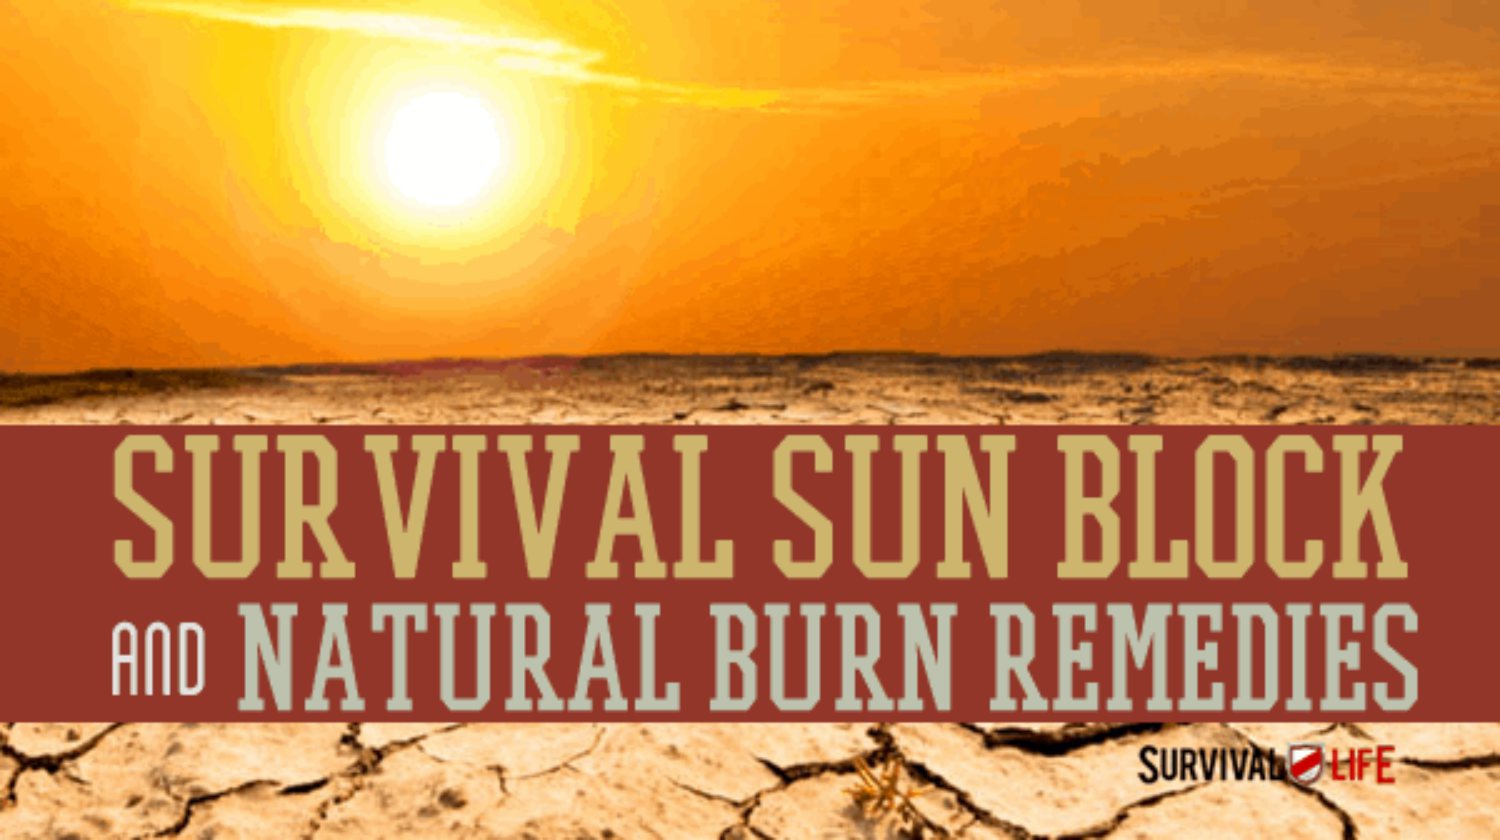 survival sun block | Primitive Sun Block Methods | Natural Remedies | natural remedies | natural home remedies | Featured